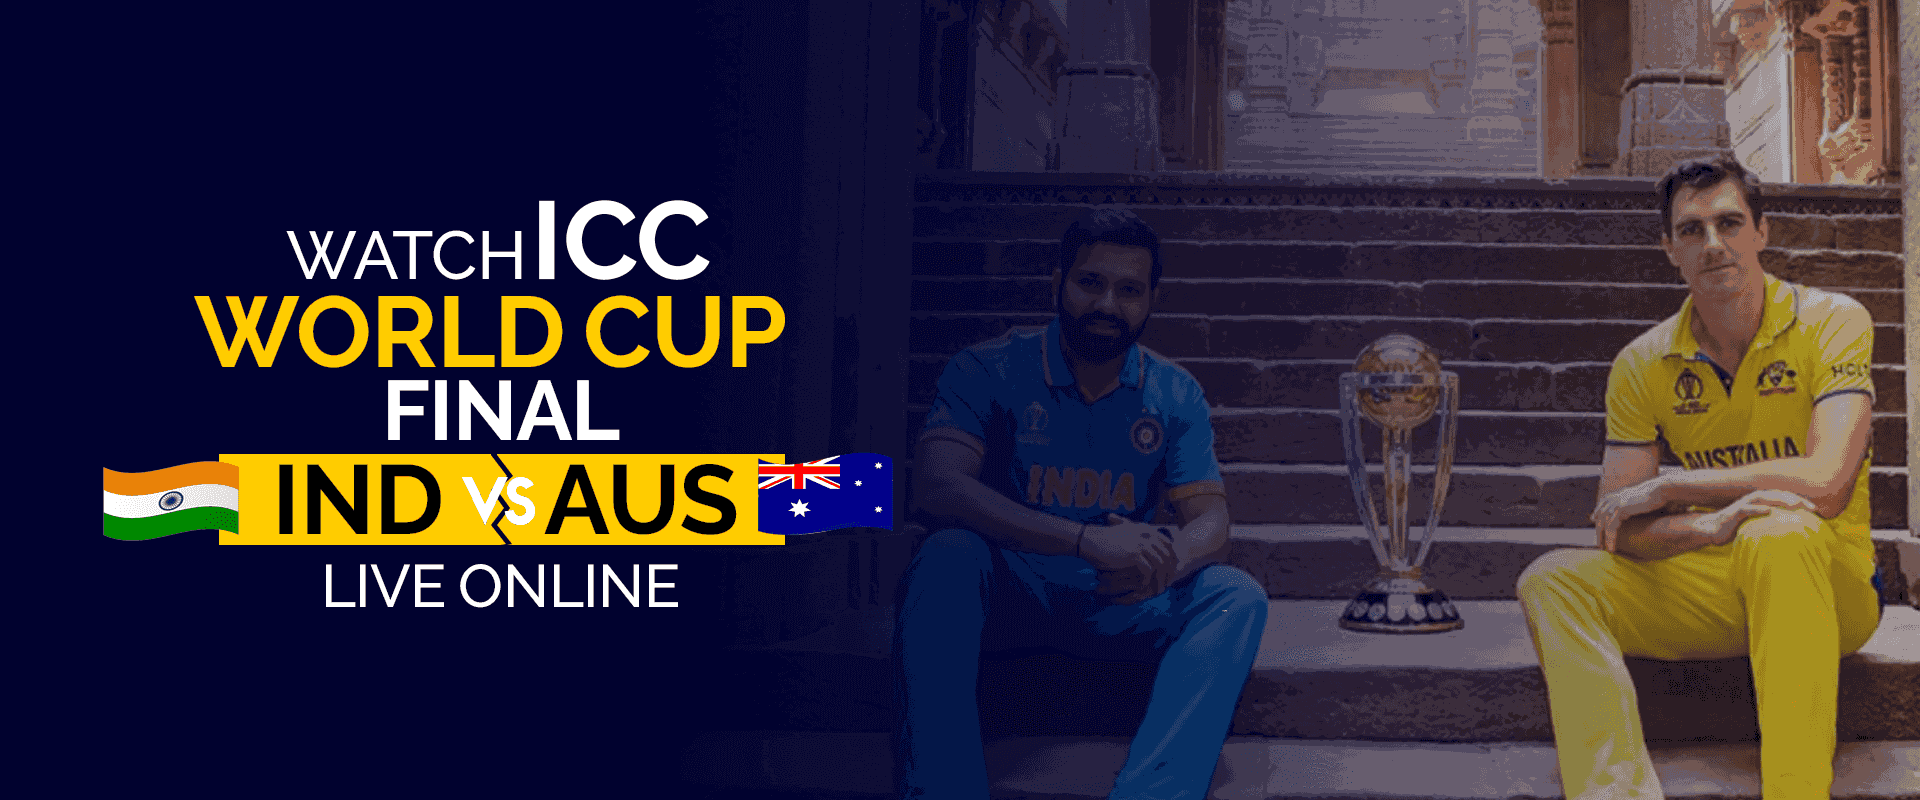 ICC 世界決勝 IND 対 AUS をオンラインでライブ観戦する